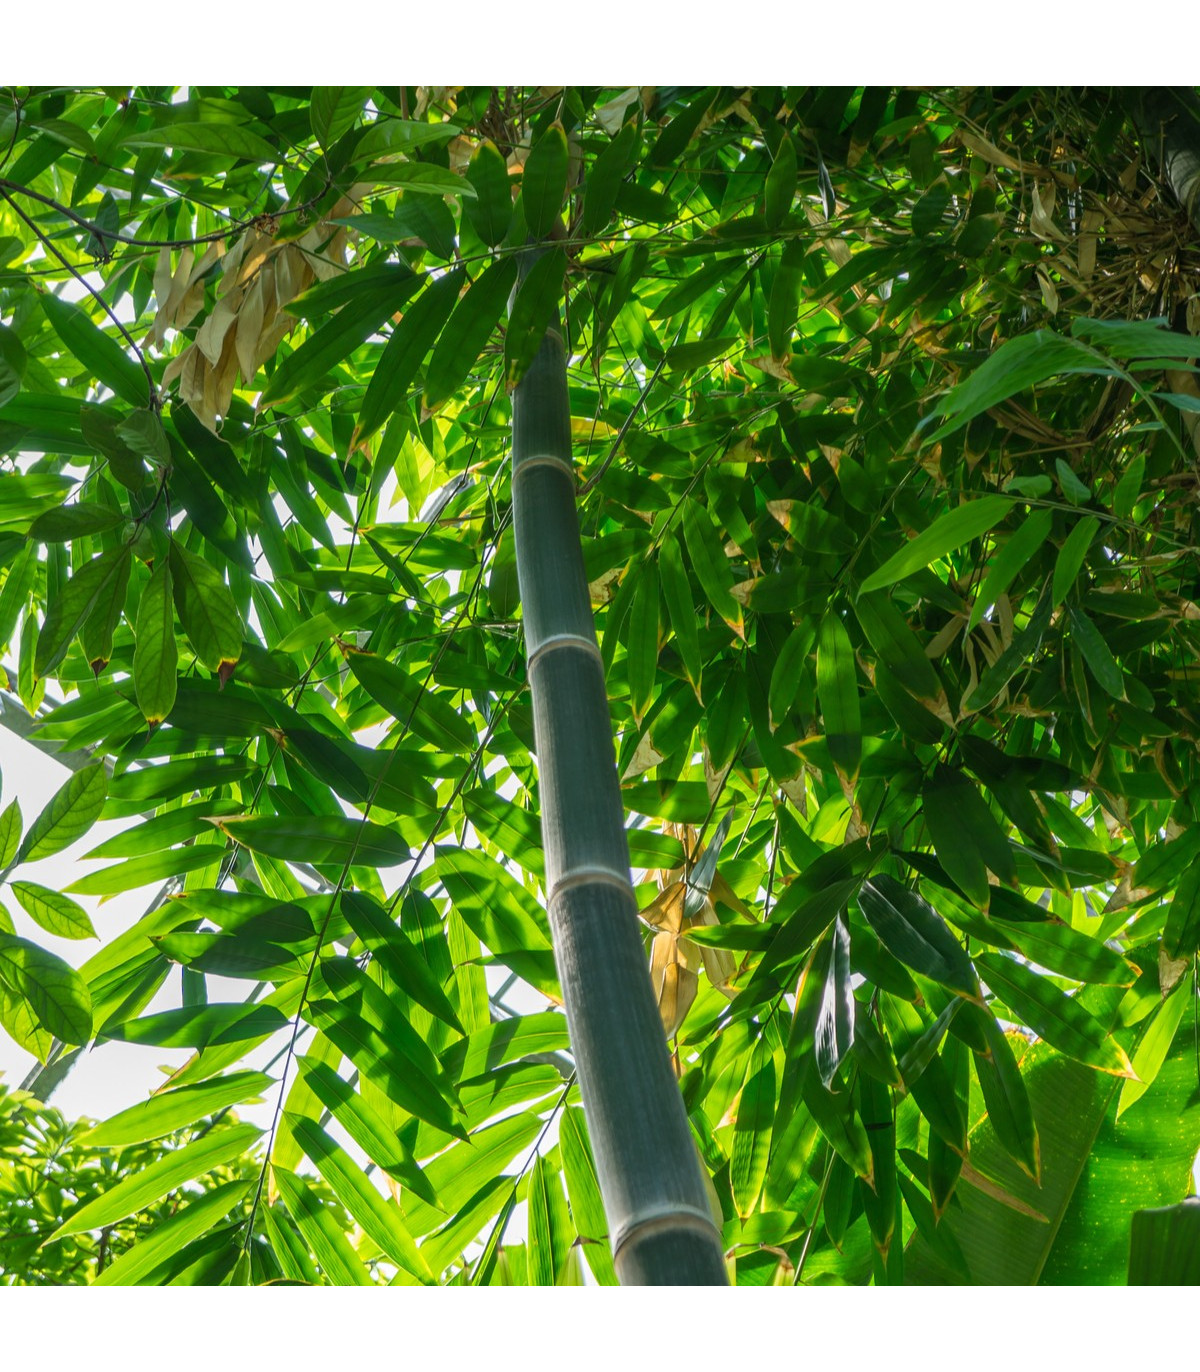 Bambus železný - Dendrocalamus Strictus - semená bambusu - 2 ks